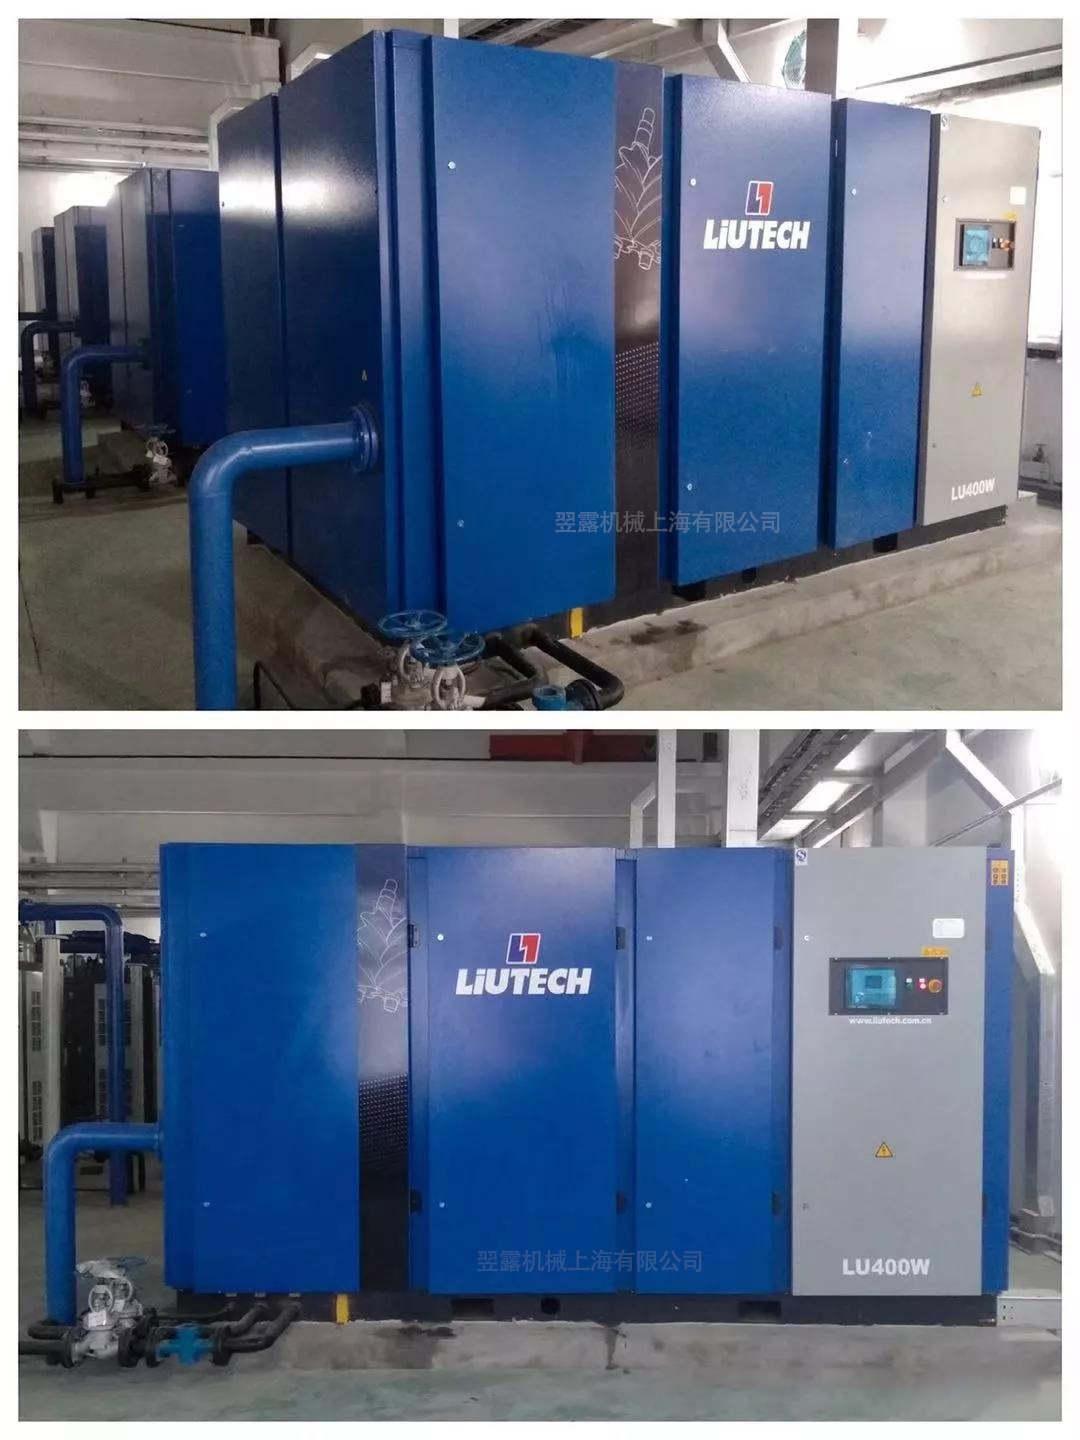 LIUTECH 空压机应用于内蒙古某超大型热电厂